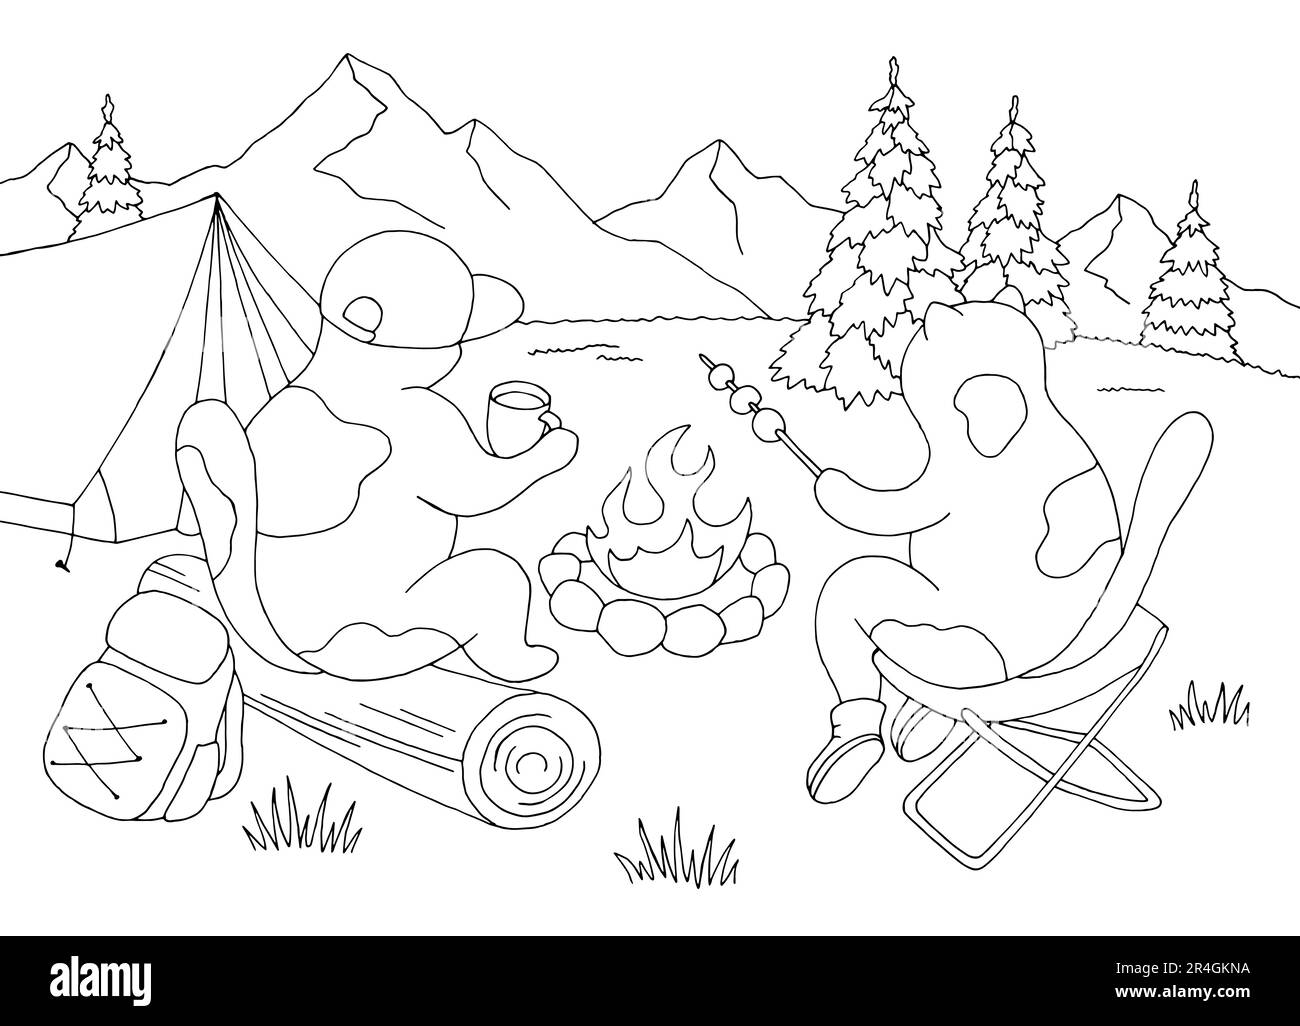 Katzen auf einer Wanderung sitzen am Feuer. Campinggrafik Schwarzweiß Landschaftszeichnung Zeichnungsvektor Stock Vektor